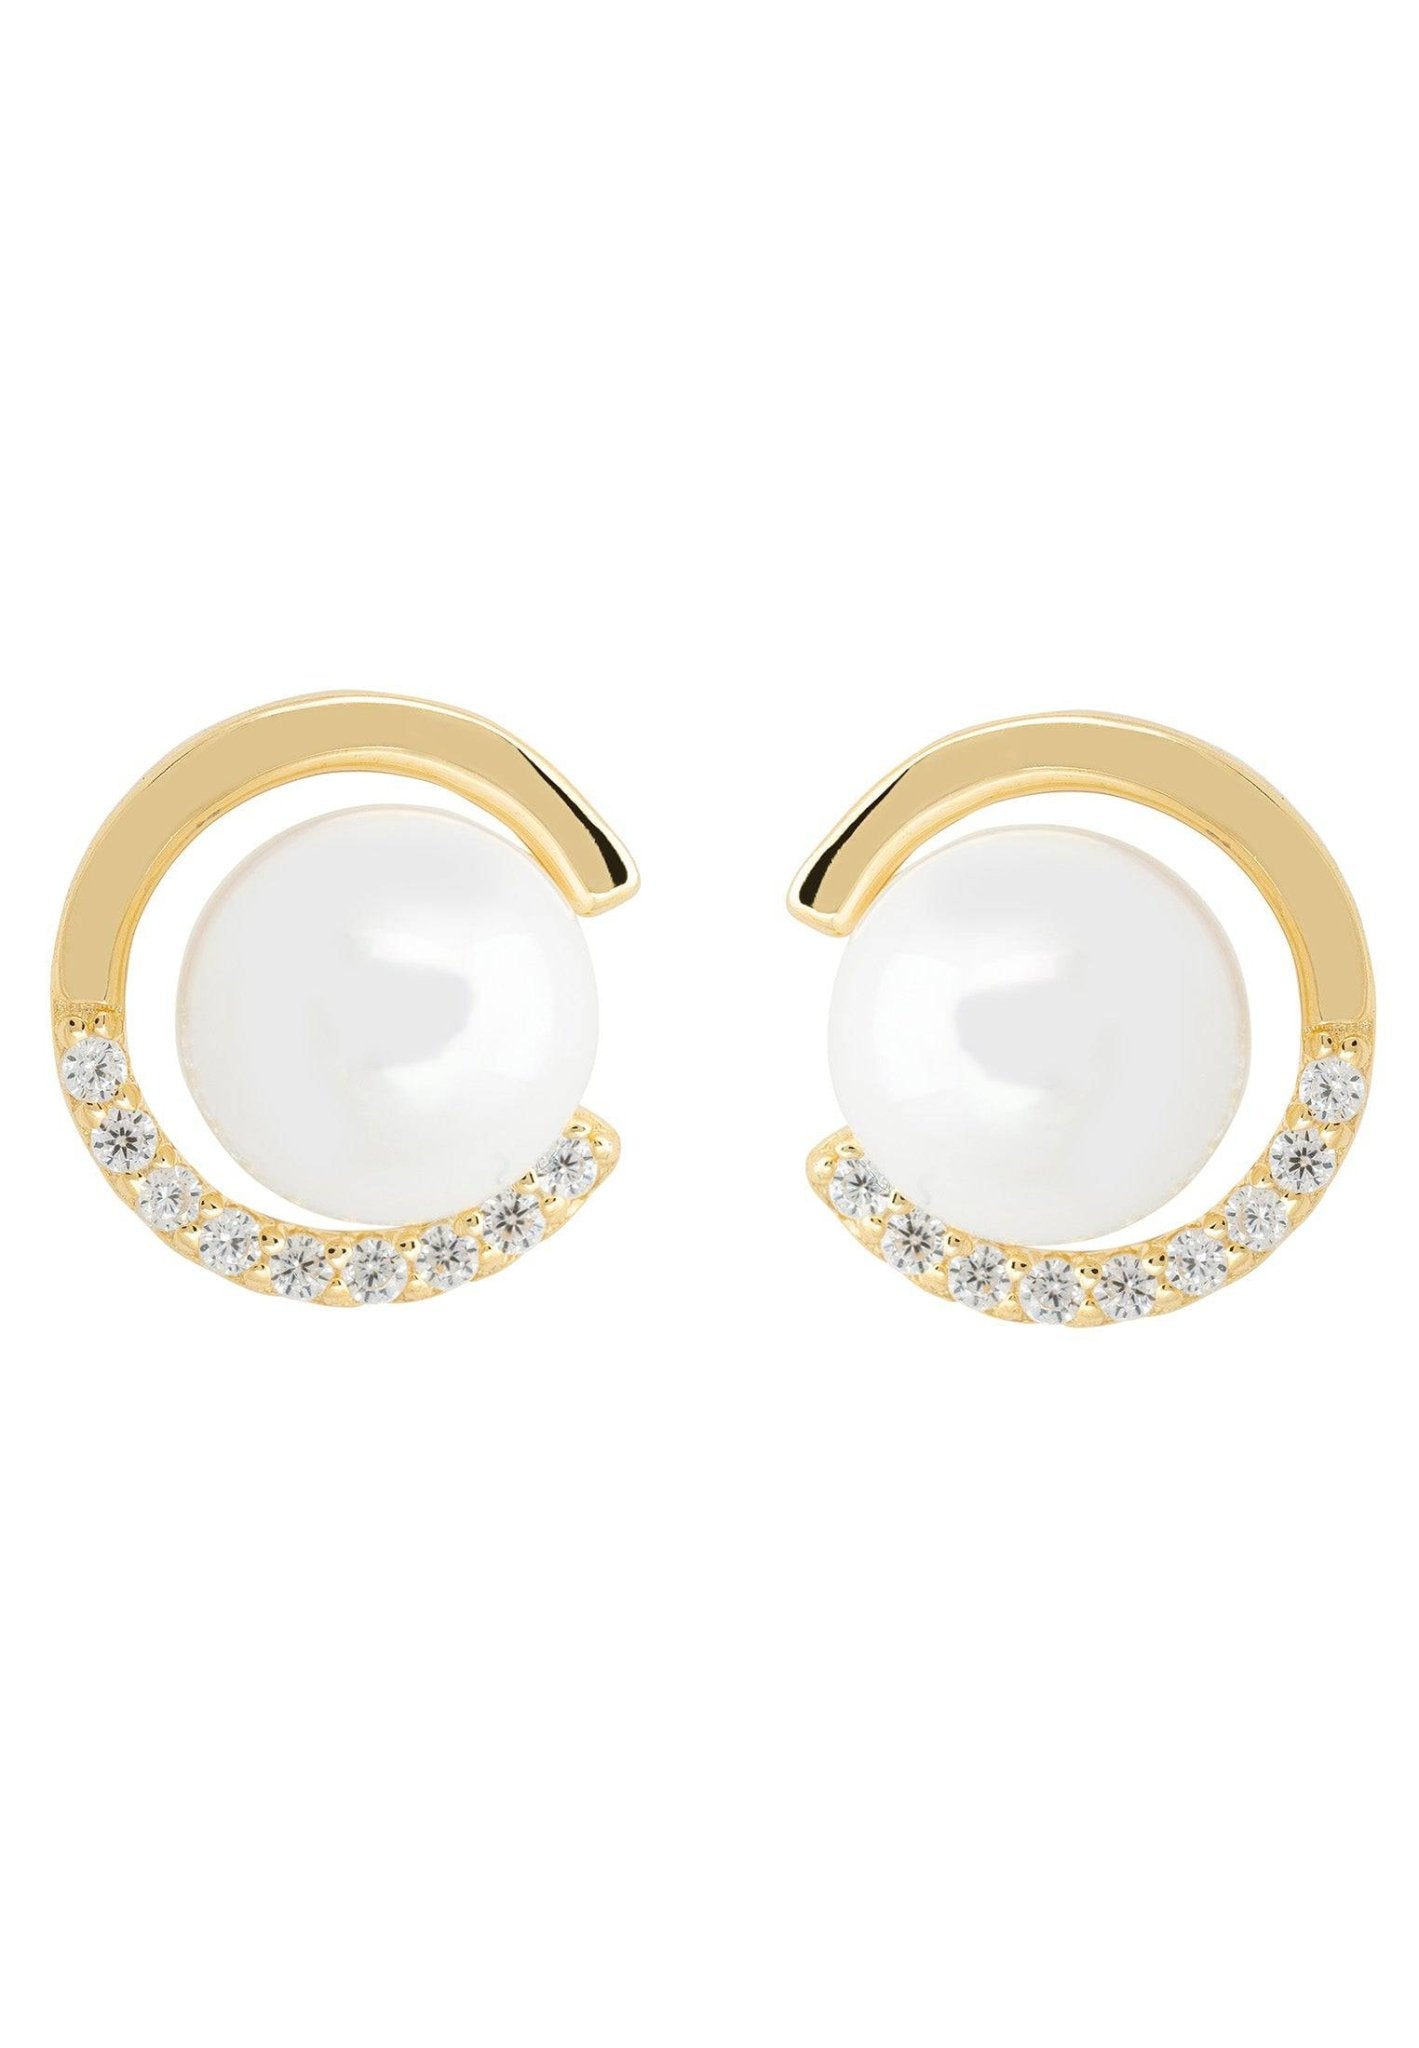 Pearl Halo Stud Earrings Gold - LATELITA Earrings